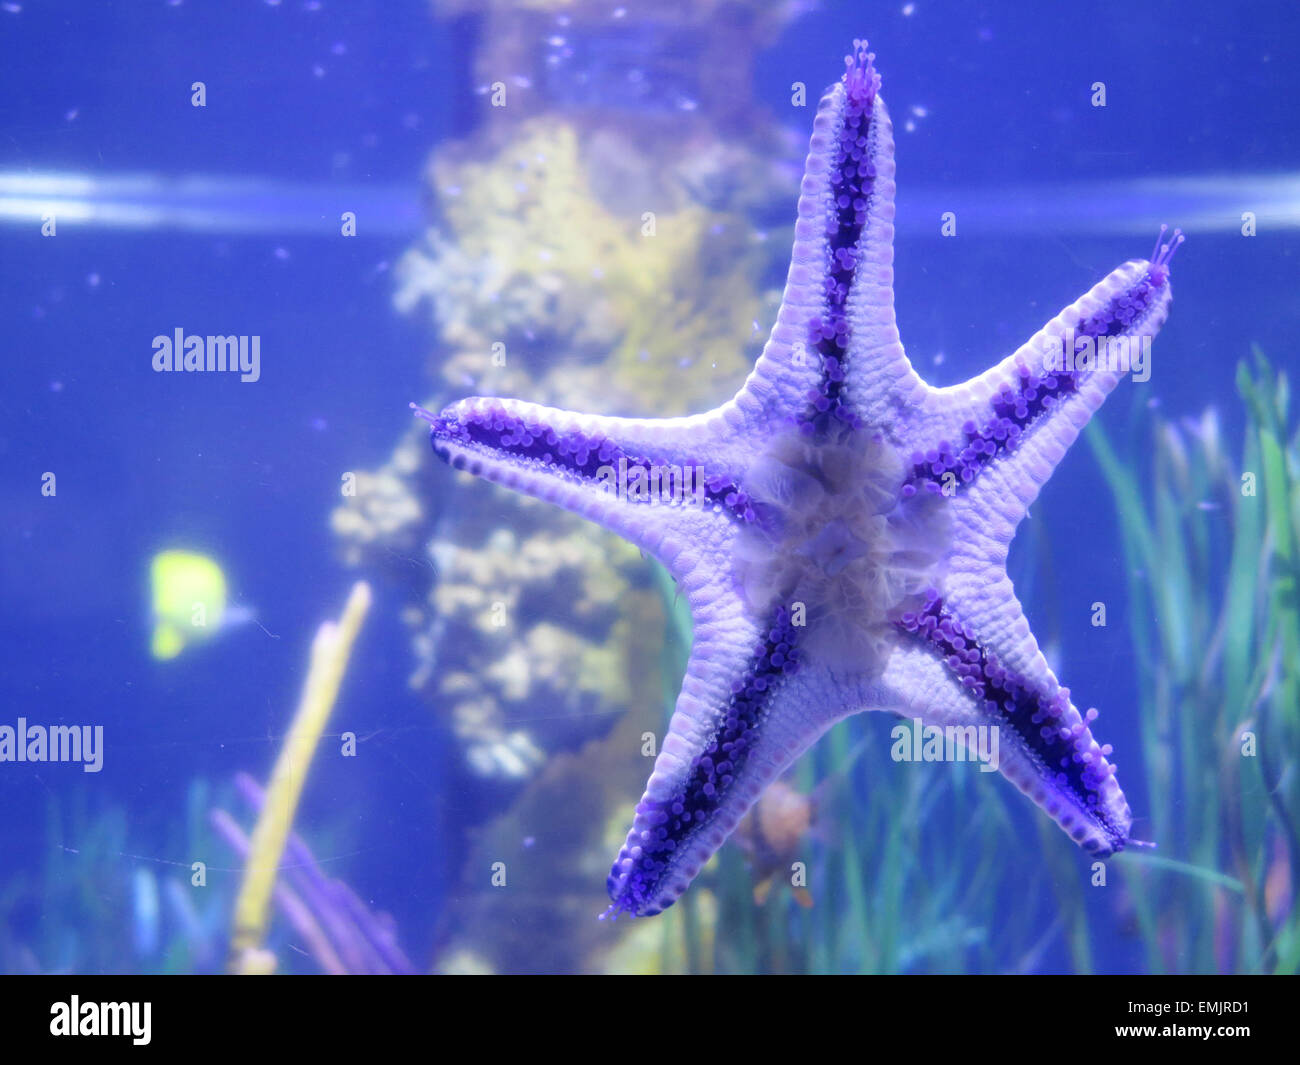 Starfish on fishbowl Stock Photo